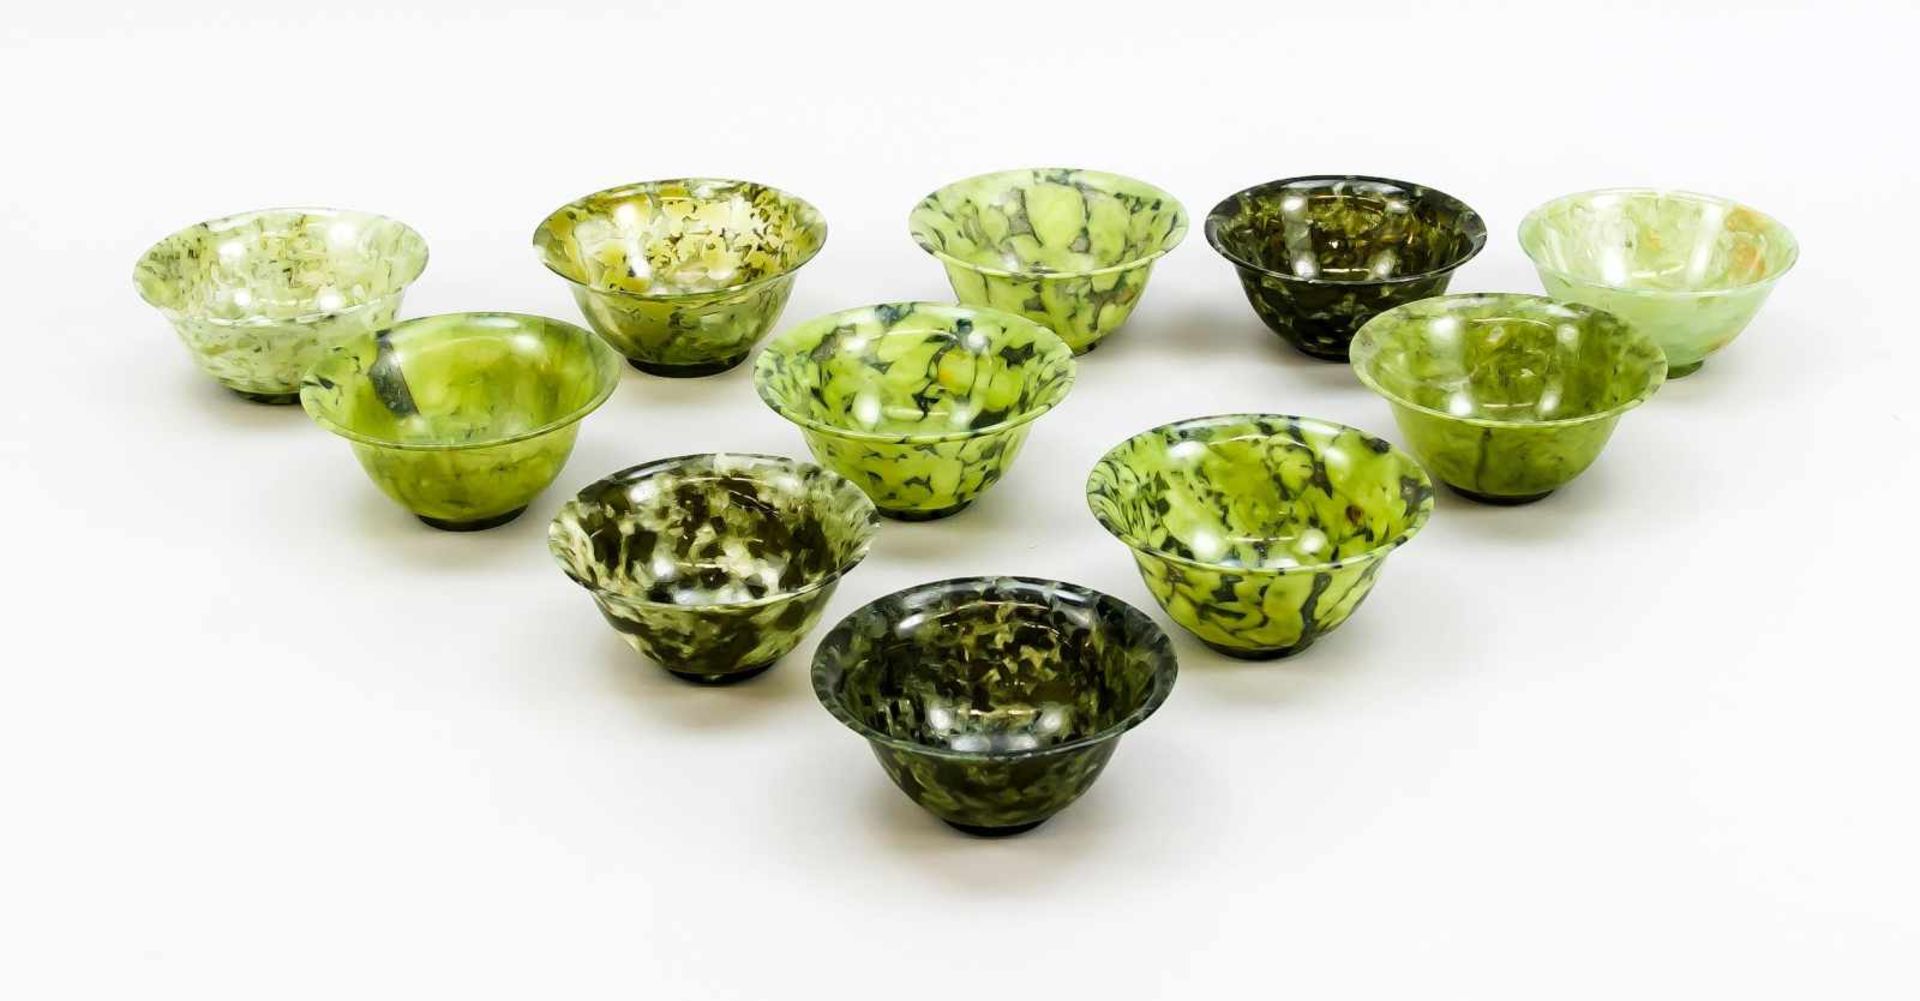 11 Jade-Schälchen, China, 20. Jh., spinatgrüne Jade mit Einschlüssen. Sehr dünnwandig,geschwungene